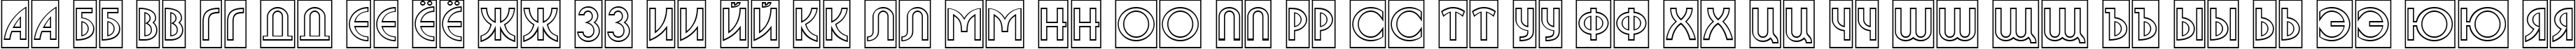 Пример написания русского алфавита шрифтом a_BosaNovaCmOtl